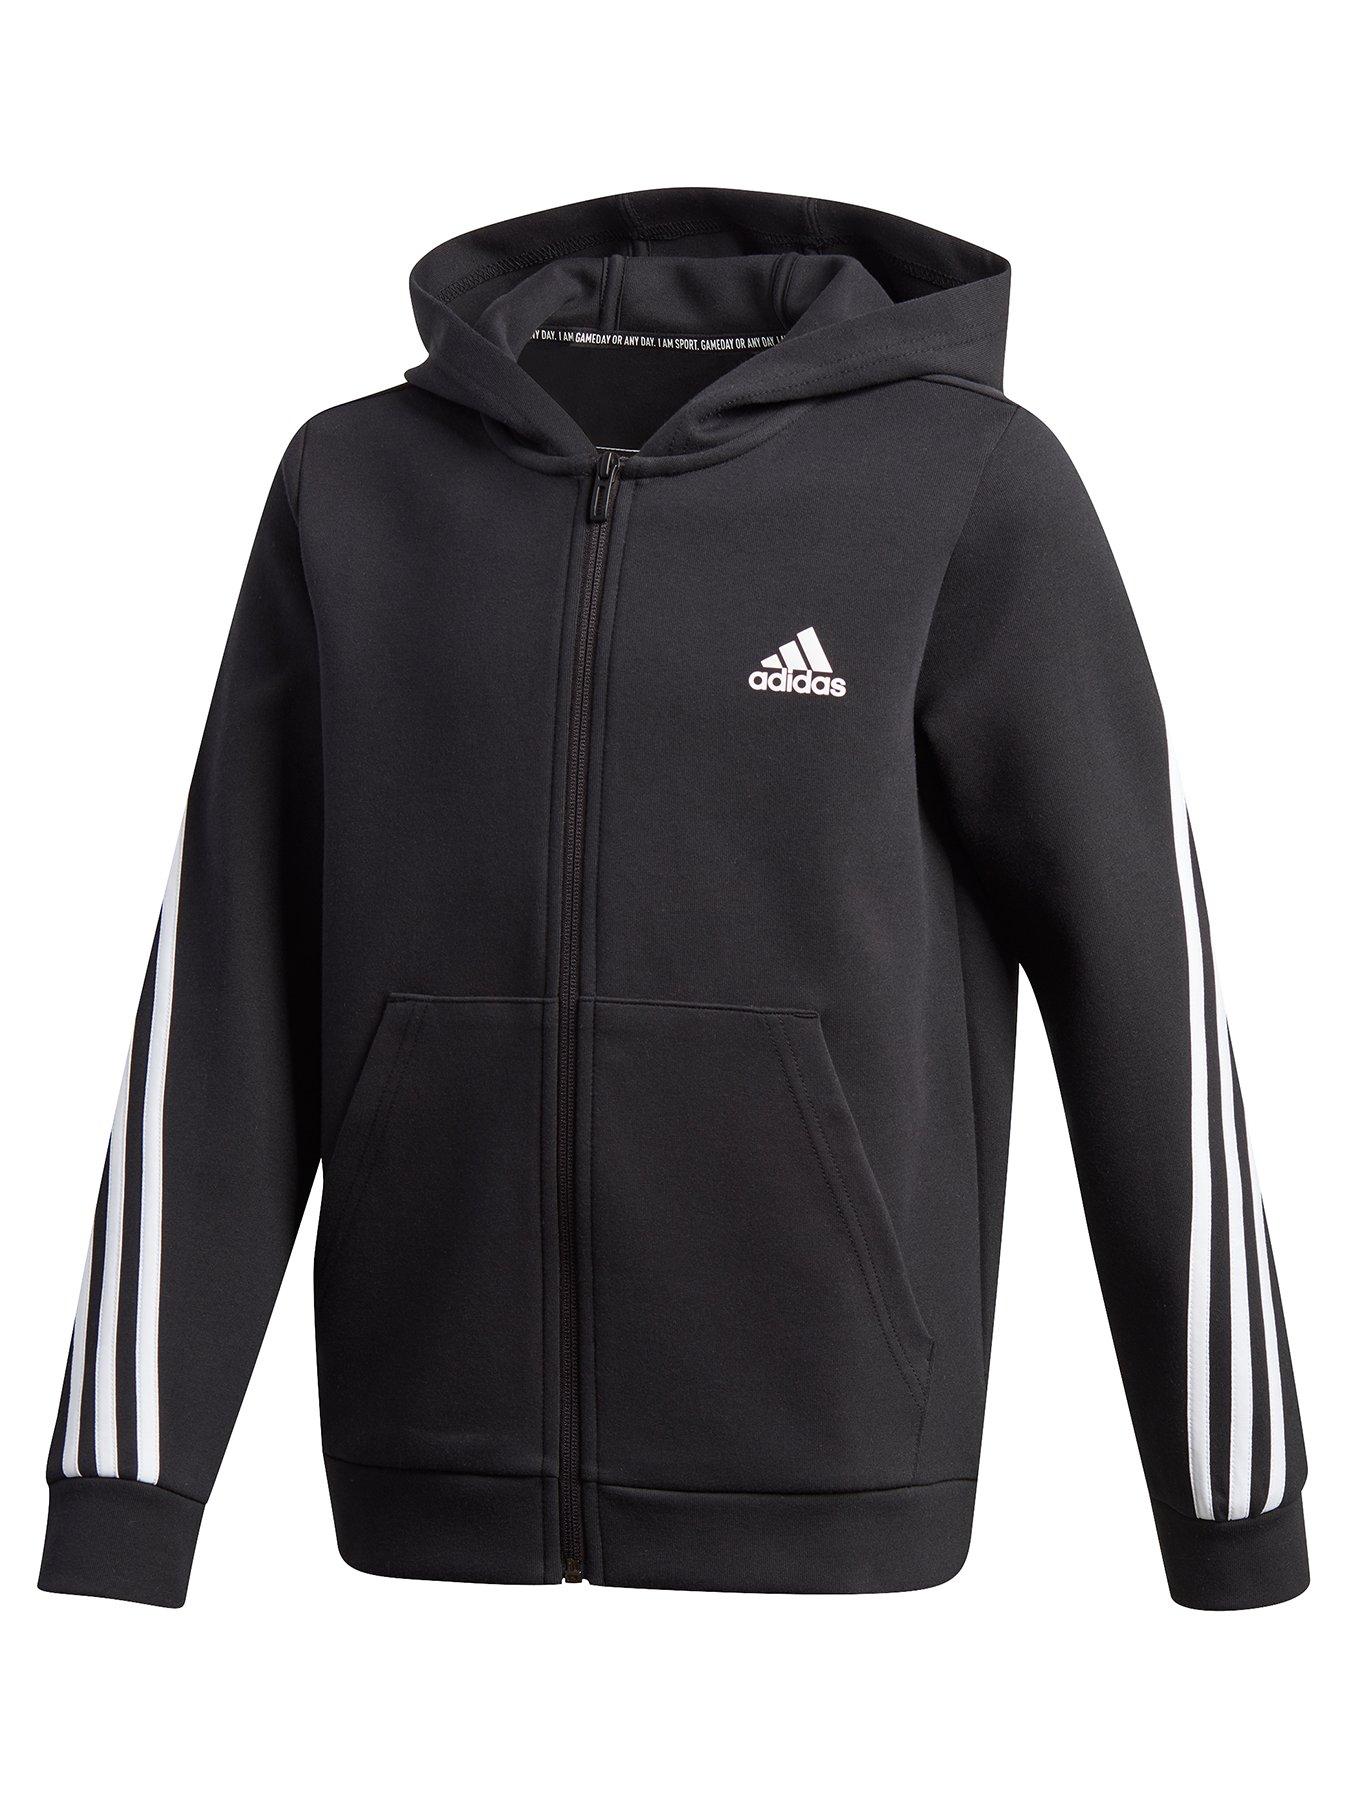 Boy | Adidas | Hoodies \u0026 sweatshirts 